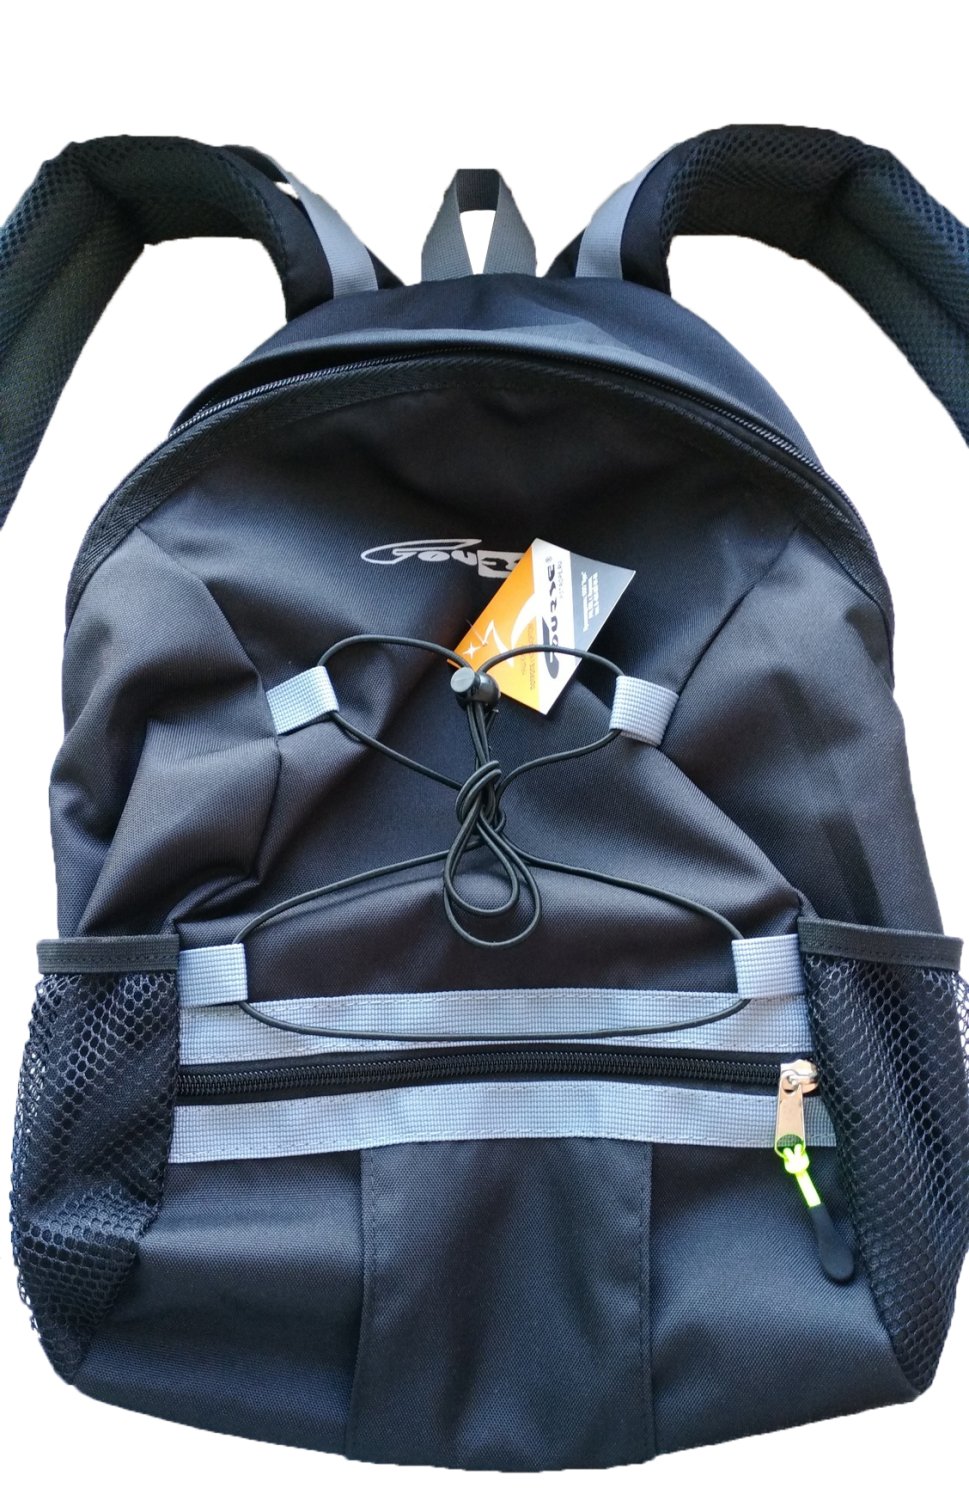 Рюкзак велосипедный Alpine, 18л, черный, рю021.018.200 3d bags рюкзак радужные бабочки